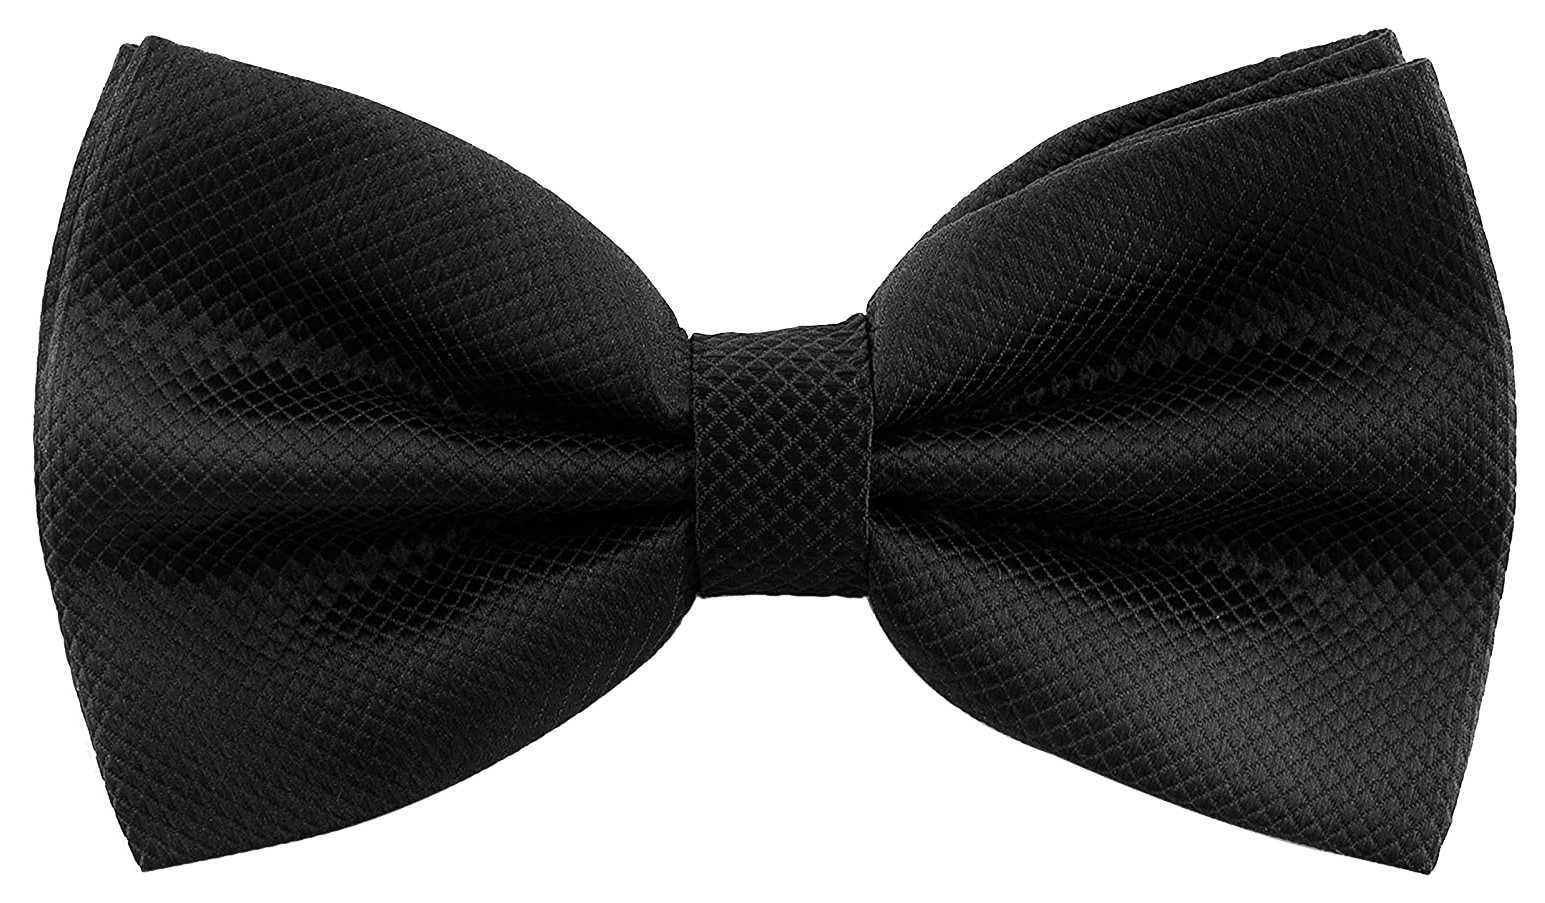 Pre-tied black bow tie by Man of Men